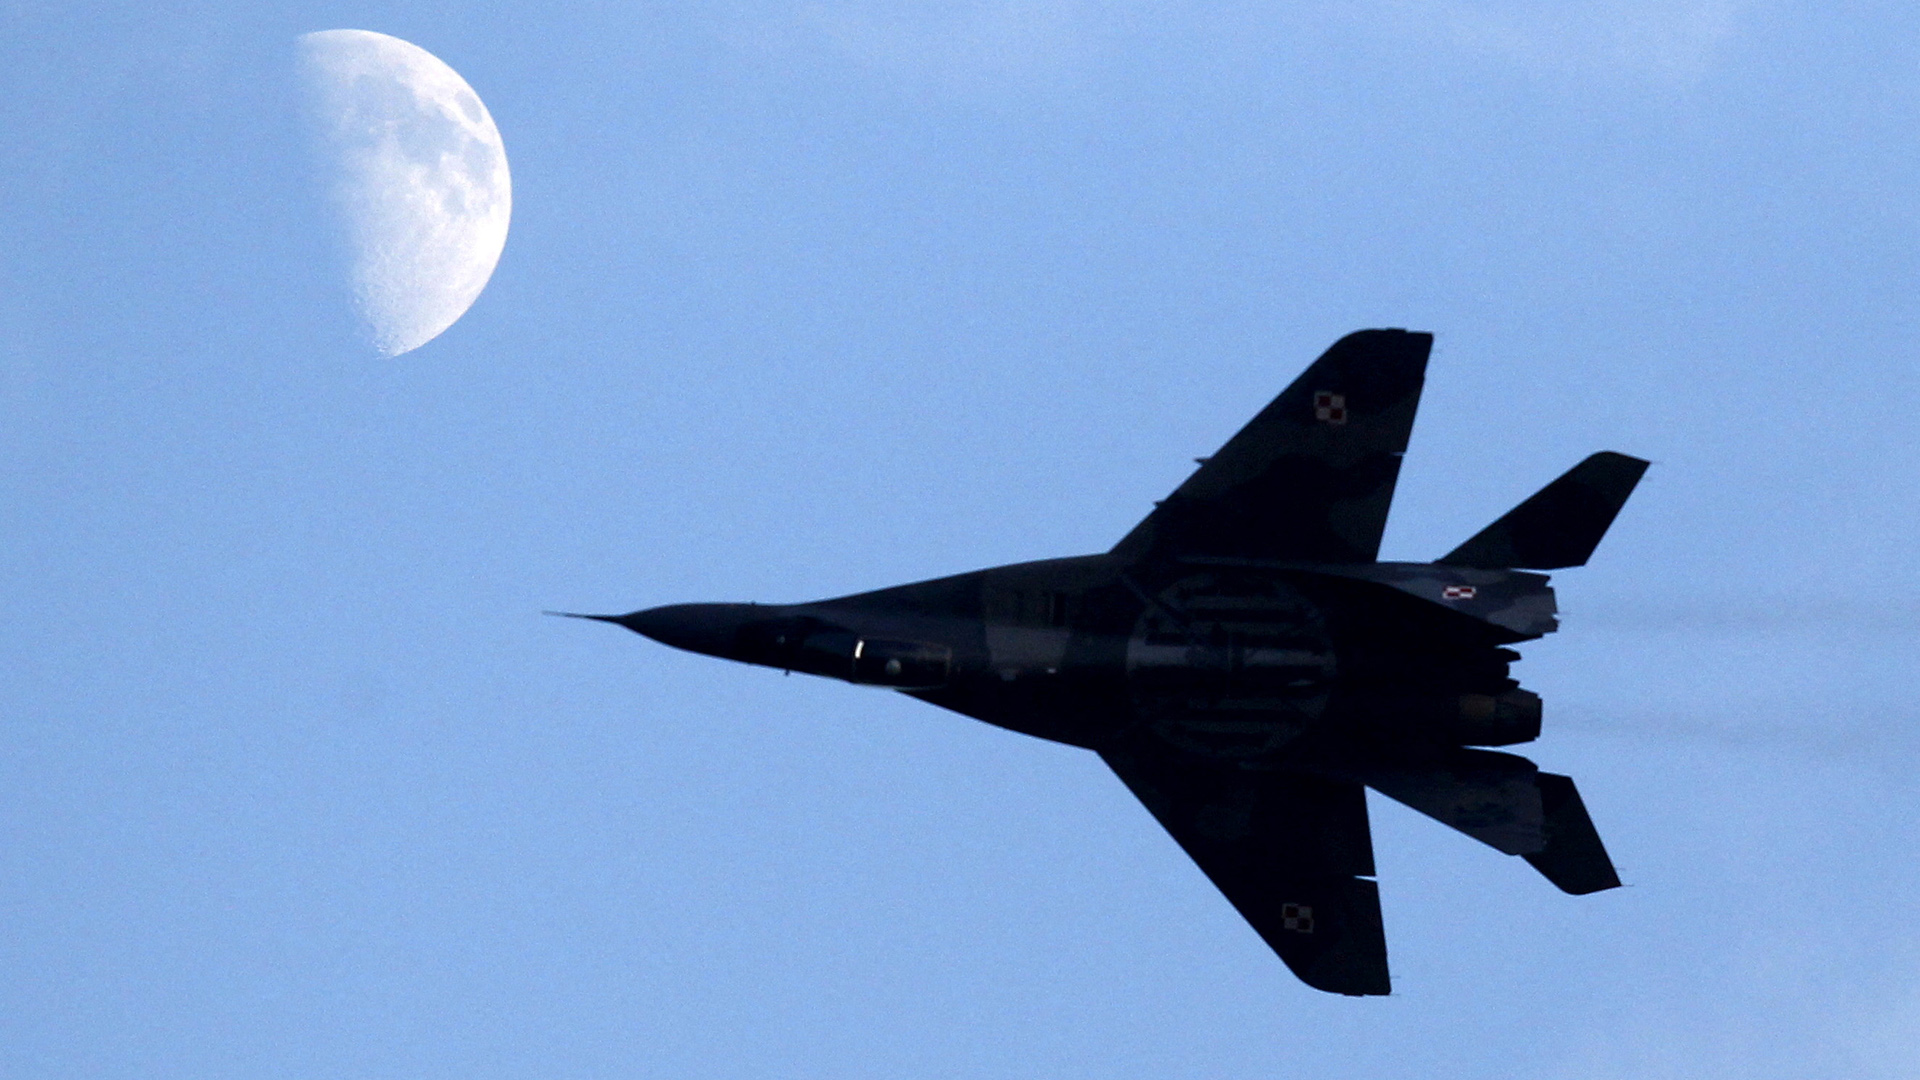 Ein polnischer Kampfjet  MiG-29 in der Luft, im Hintergrund ist der Mond zu sehen. | REUTERS